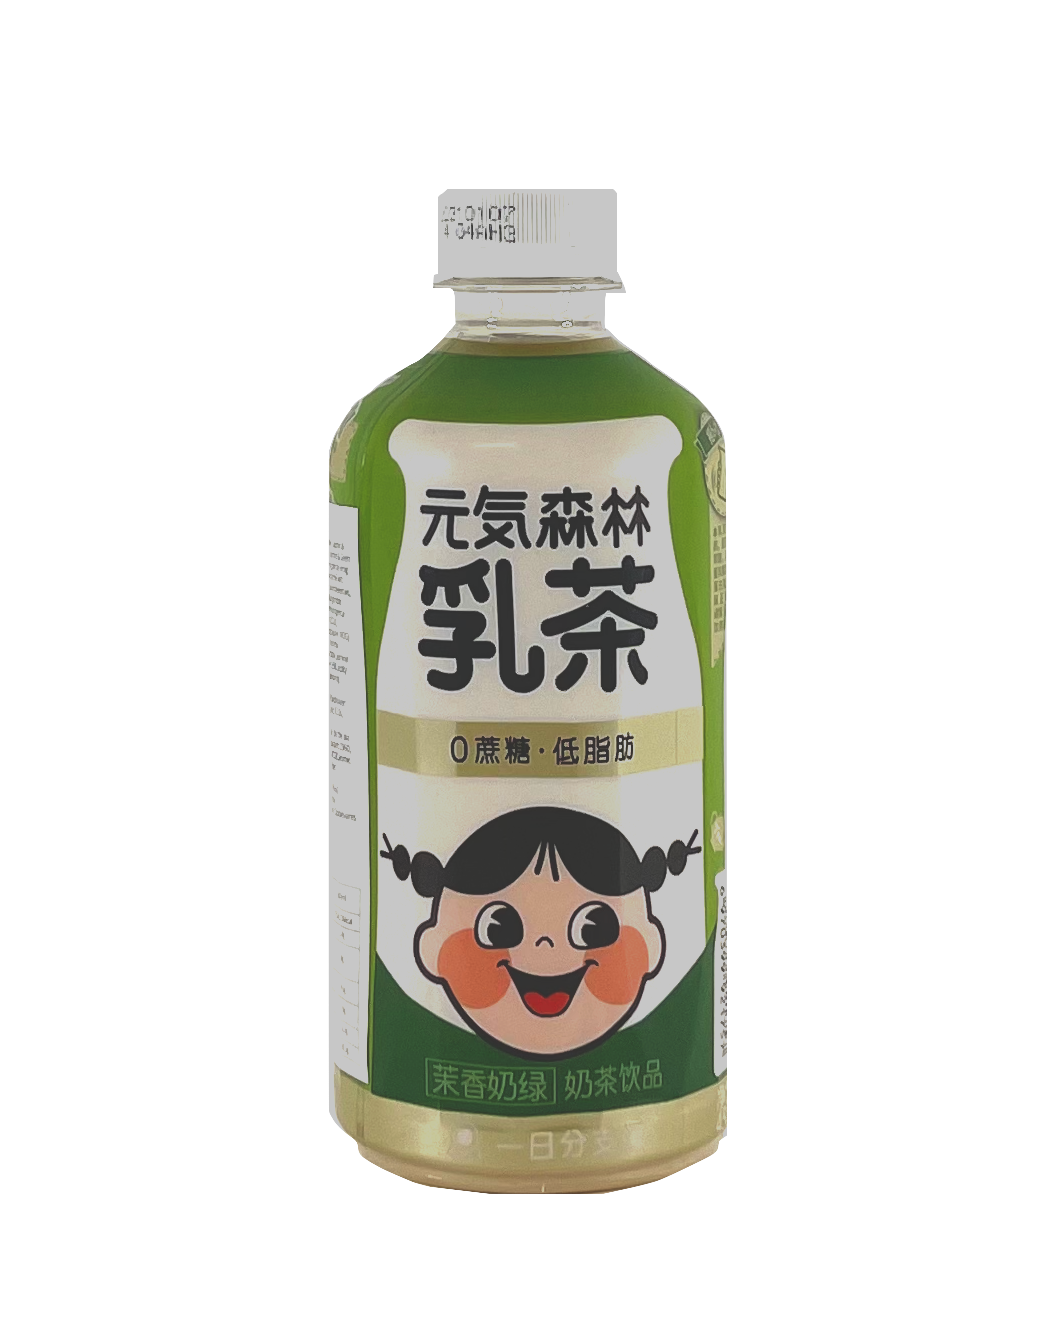 乳茶-茉香奶绿风味 450ml 元气森林 中国